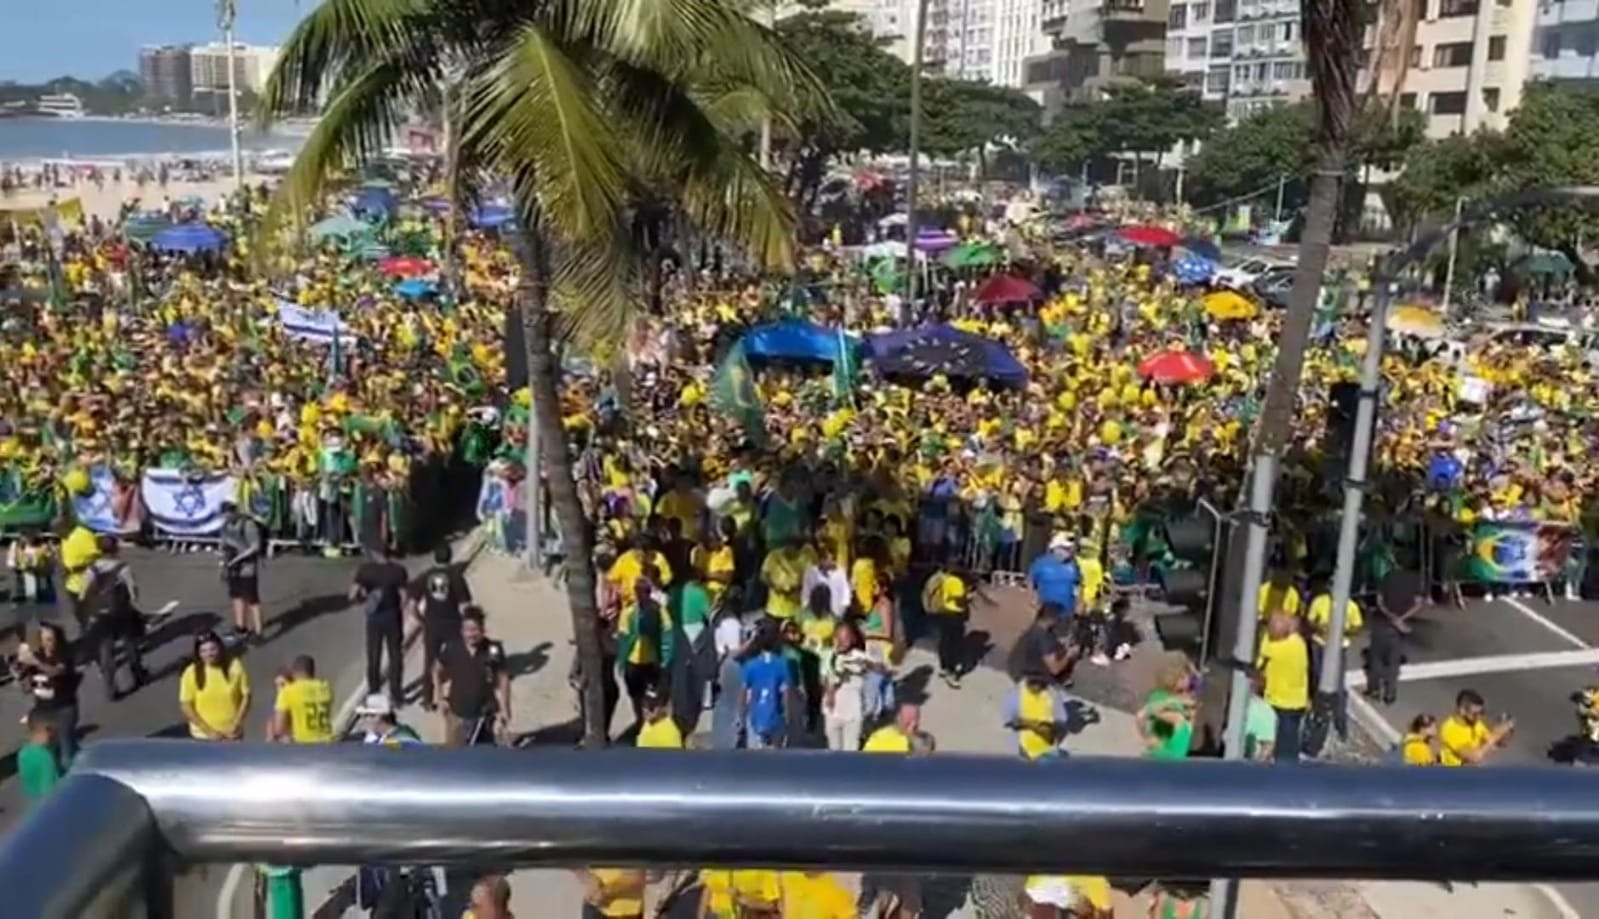 AO VIVO: Assista a ato convocado por Bolsonaro no Rio de Janeiro